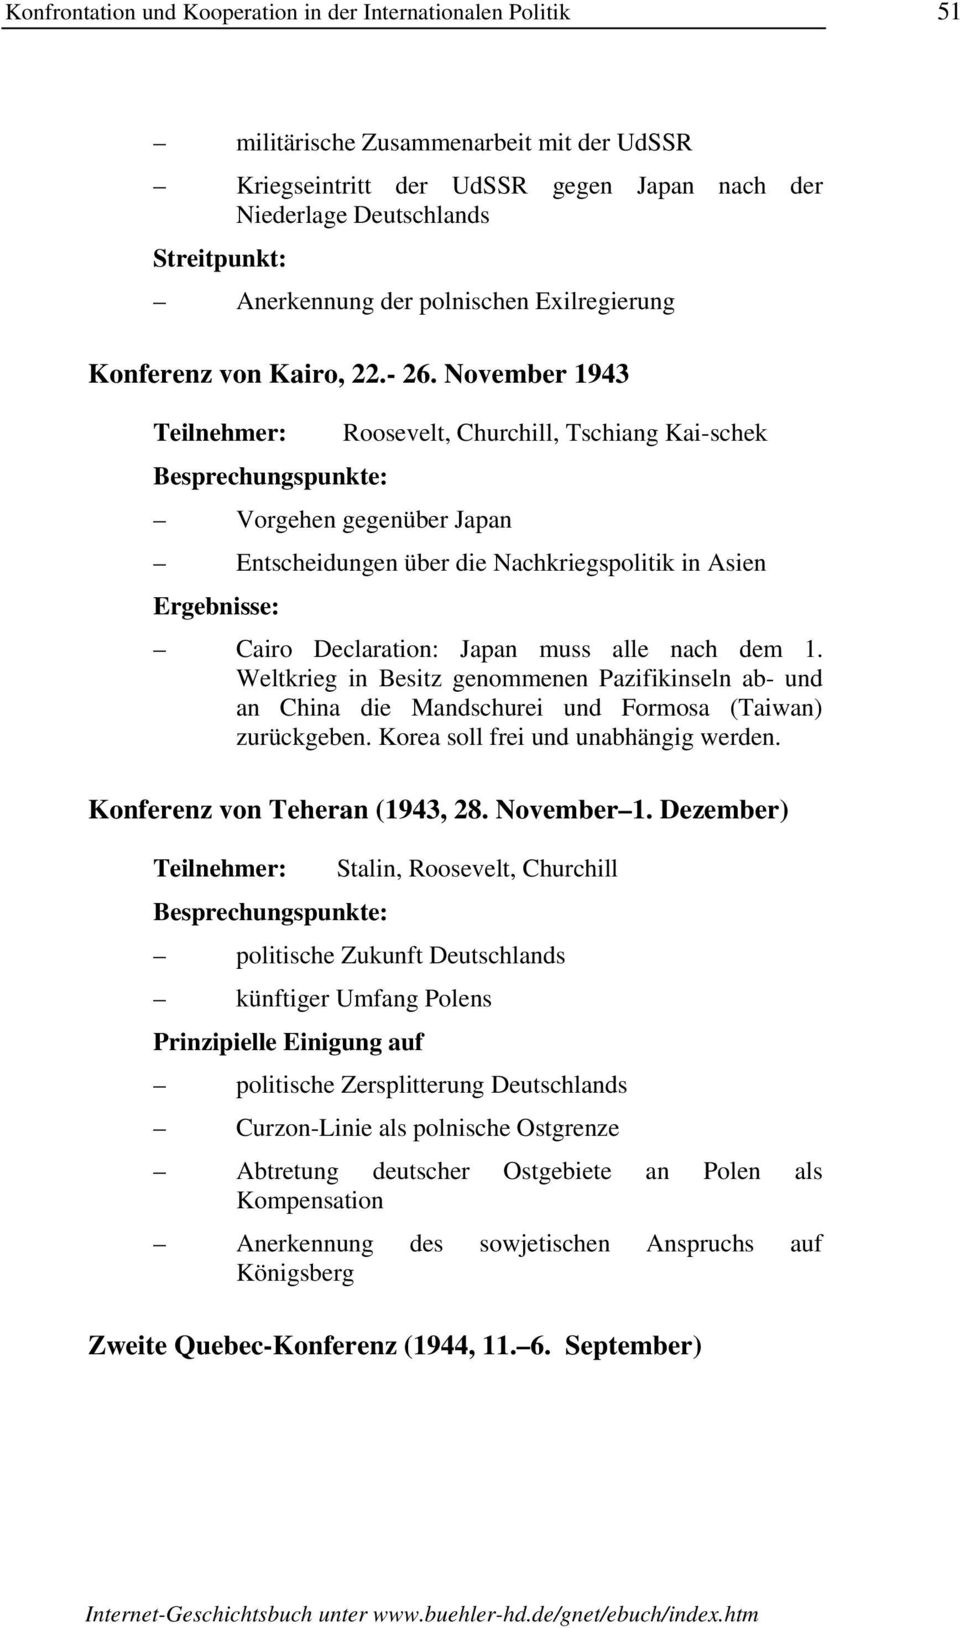 November 1943 Vorgehen gegenüber Japan Roosevelt, Churchill, Tschiang Kai-schek Entscheidungen über die Nachkriegspolitik in Asien Cairo Declaration: Japan muss alle nach dem 1.